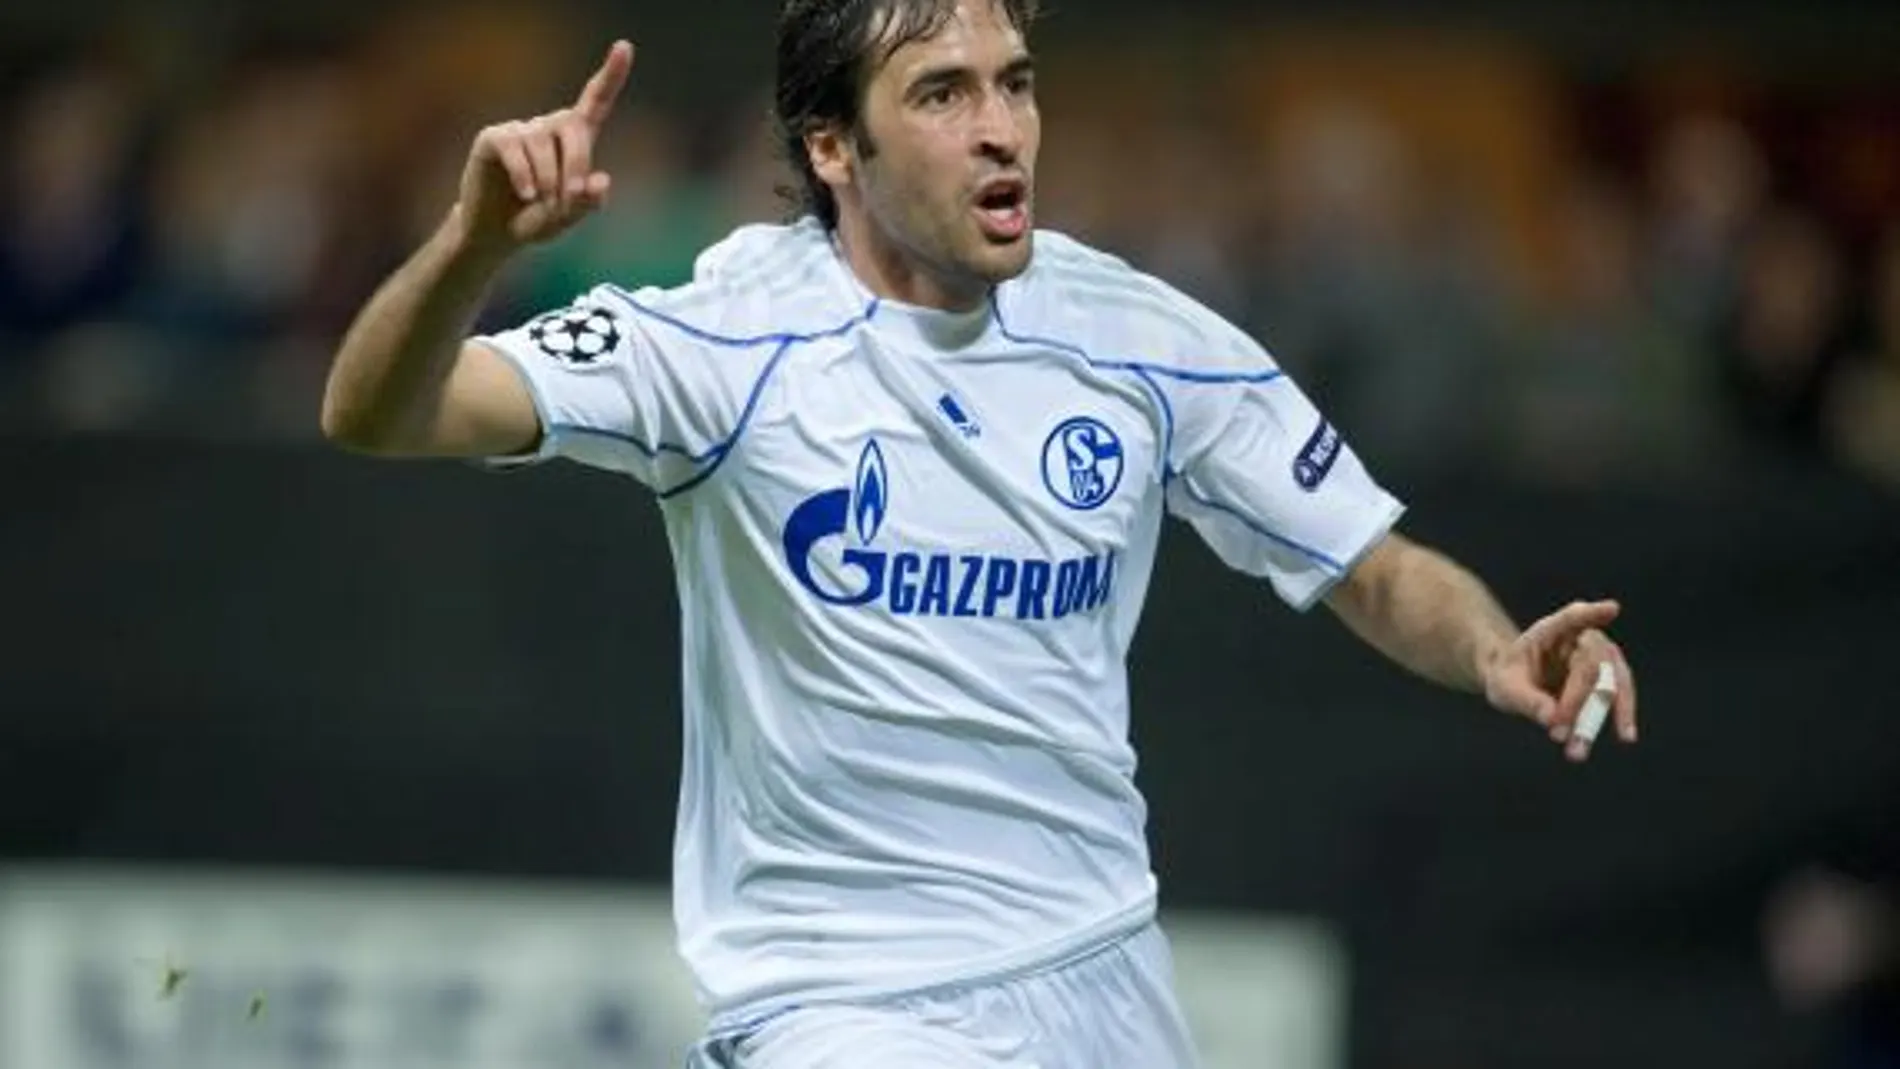 El jugador español del Schalke 04 Raúl González celebra tras anotar ante el Inter de Milán